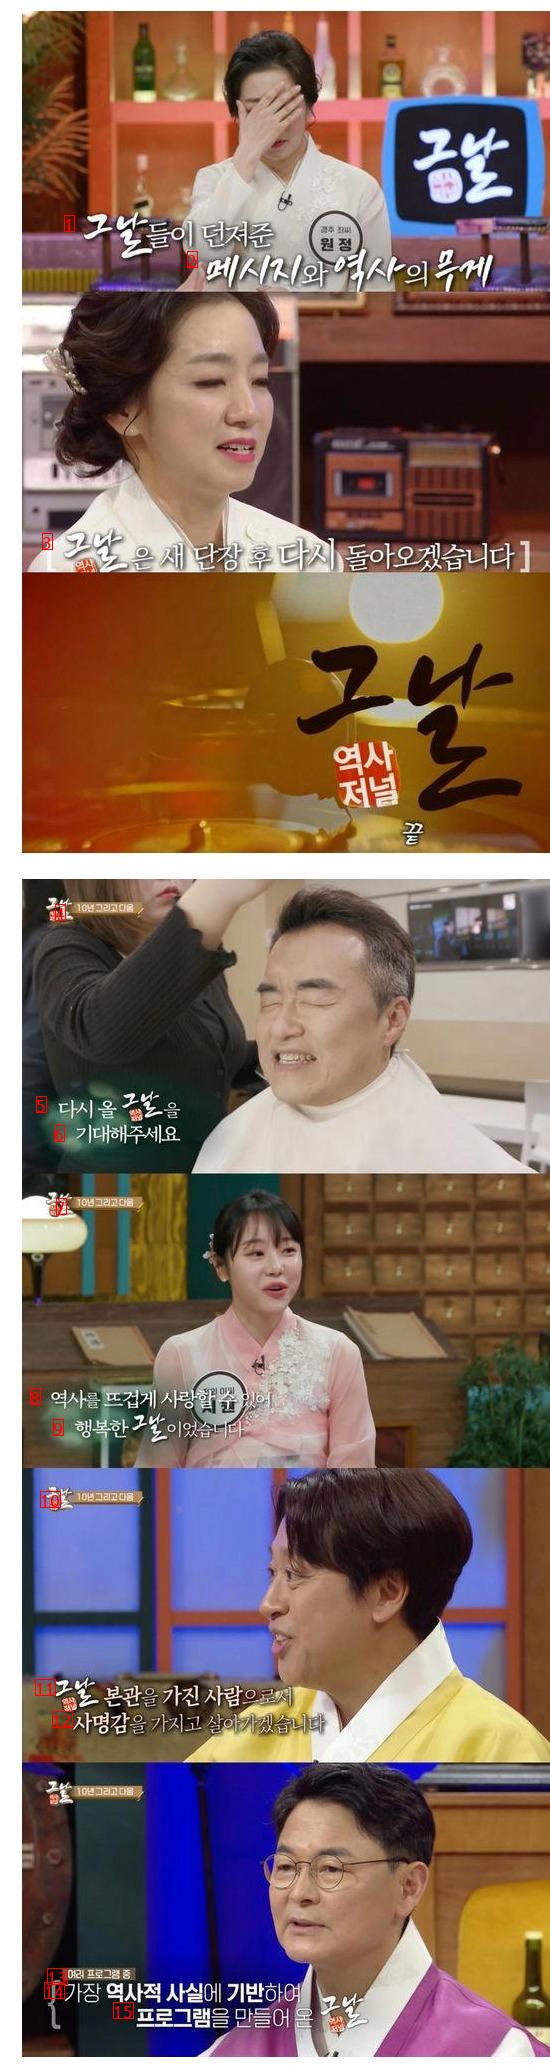 MC도 울었다...''역사저널 그날'' 설특집 종영, KBS 1TV도 ''..